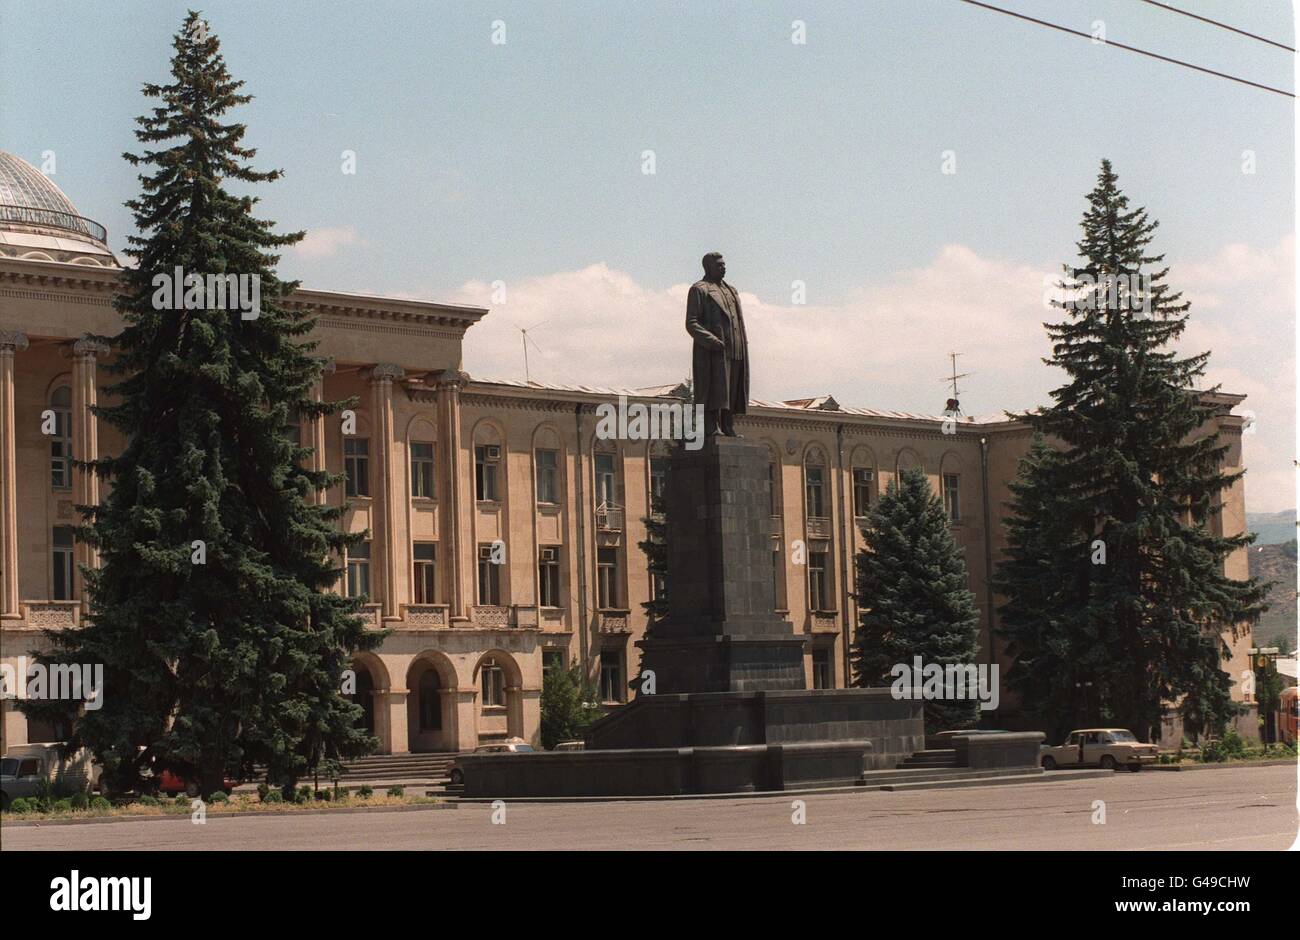 Uno degli unici monumenti rimasti di Joseph Stalin nell'ex U.S.R. Si può vedere nella piazza principale della città di Gori in Georgia dove Stalin è nato. Foto di Rebecca Naden/PA Foto Stock